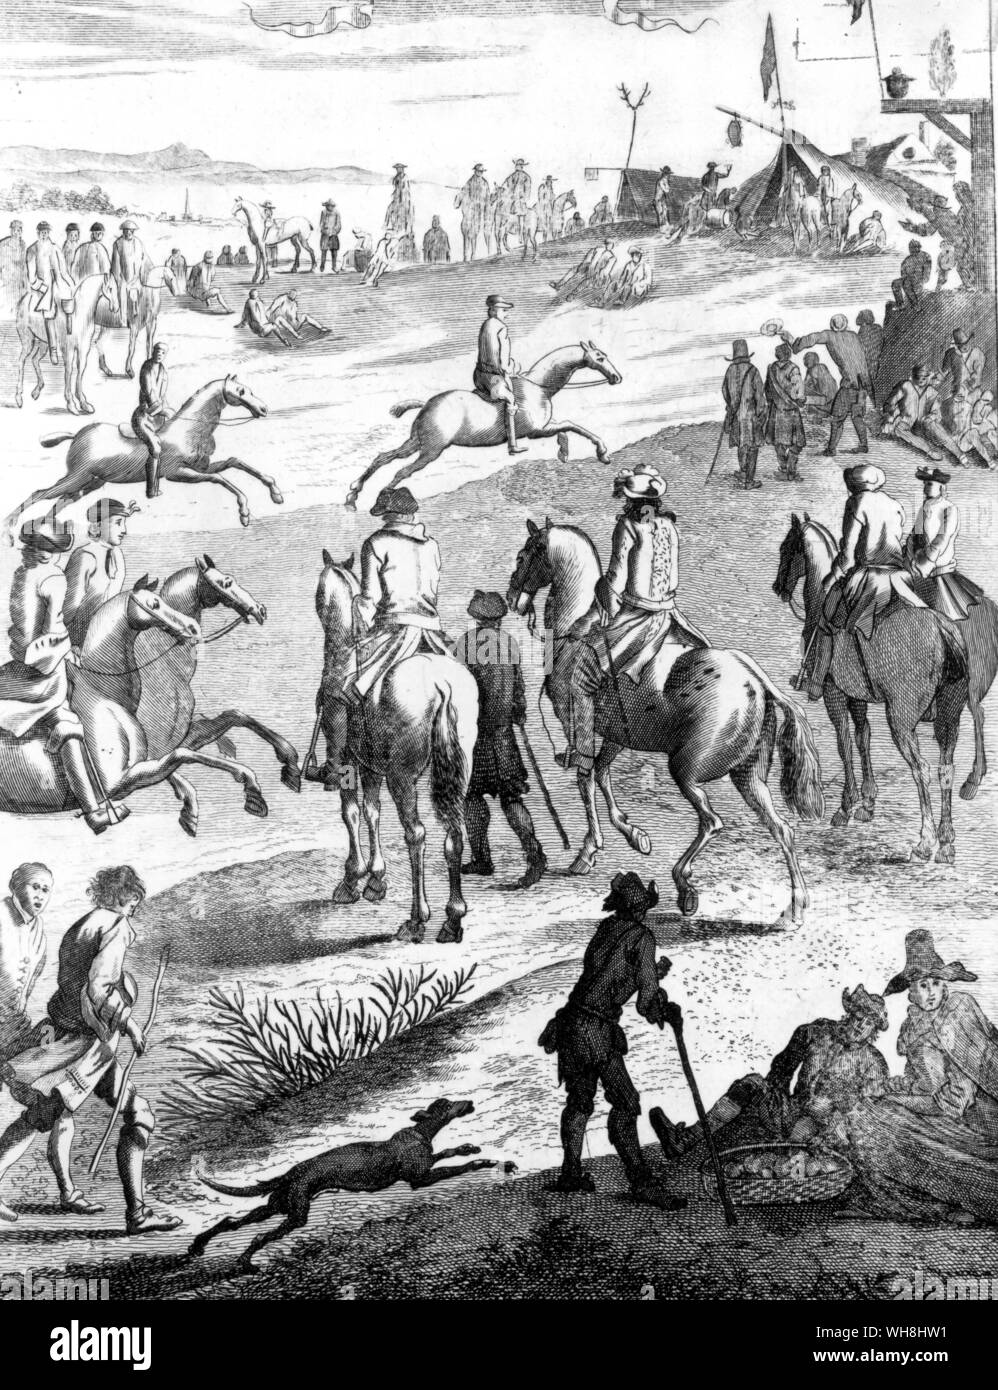 Pferderennen (sic) - Dies ist in der Regel in Newmarket behauptete ein Match zwischen Charles II. und Henry Jermyn werden im Jahr 1684, aber das ist Aufgrund der Zeitpunkt unwahrscheinlich, das Gelände und der Gypsy Encampment. Es ist sicher eine der tausenden von Unbekannt lokale Veranstaltungen - regelmäßige Treffen oder improvisierte übereinstimmt, die zwischen 1660 und 1740 enorm gewachsen. Die Pferde waren Jäger oder Galloways, die Reiter ihre Eigentümer oder pflegt, der raceground beliebige Stück des Gemeinsamen und den Preis ein Maß von Hafer oder Gerste. Die Geschichte der Pferderennen von Roger Longrigg, Seite 50. Stockfoto